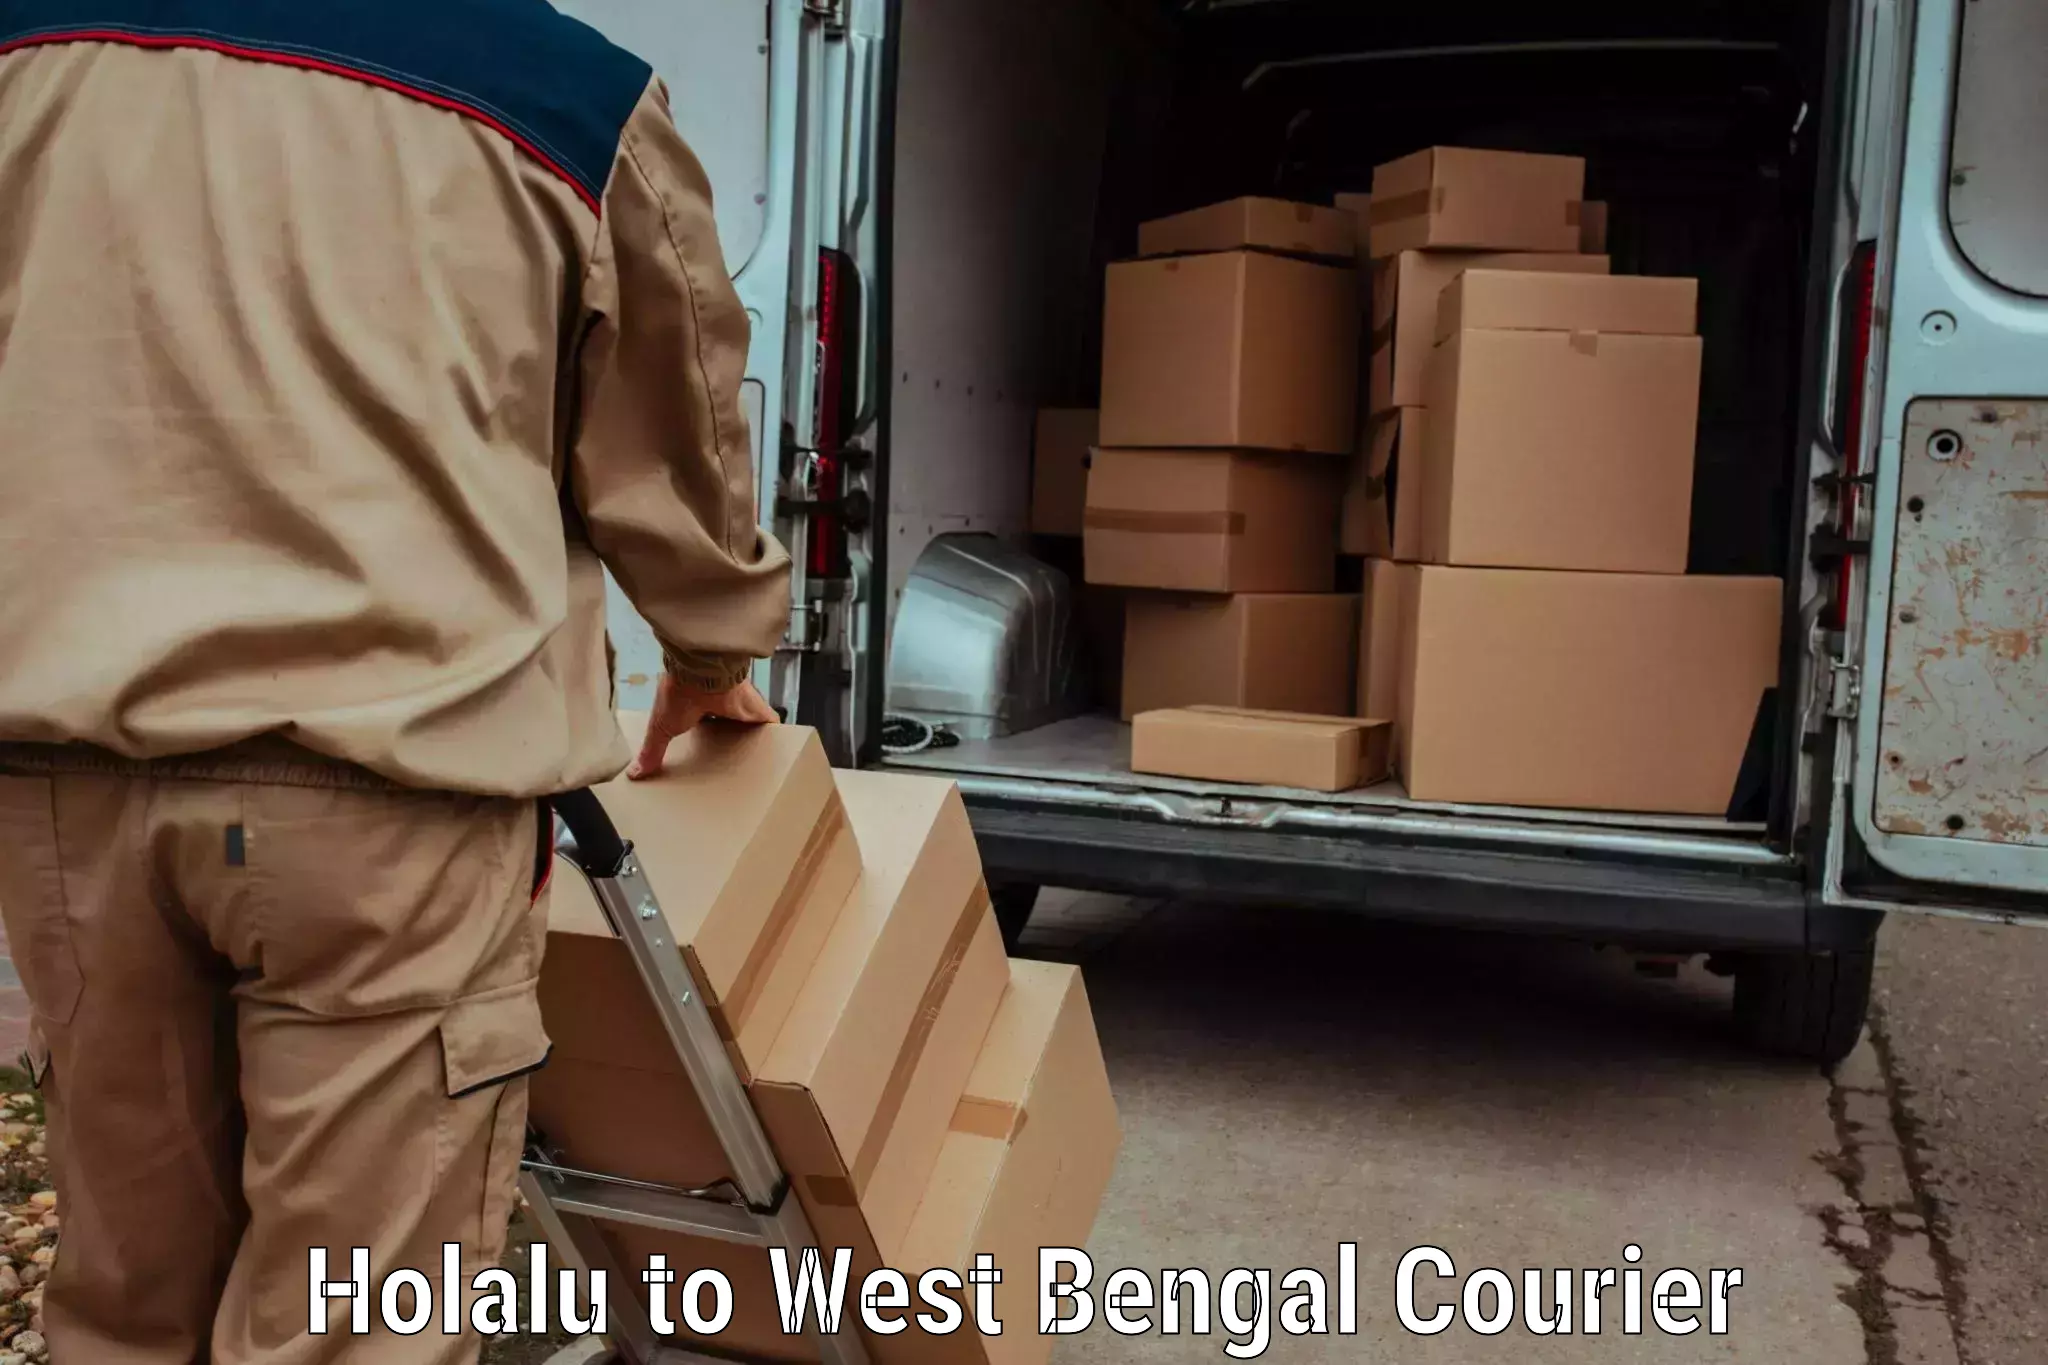 Luggage transport company Holalu to West Bengal